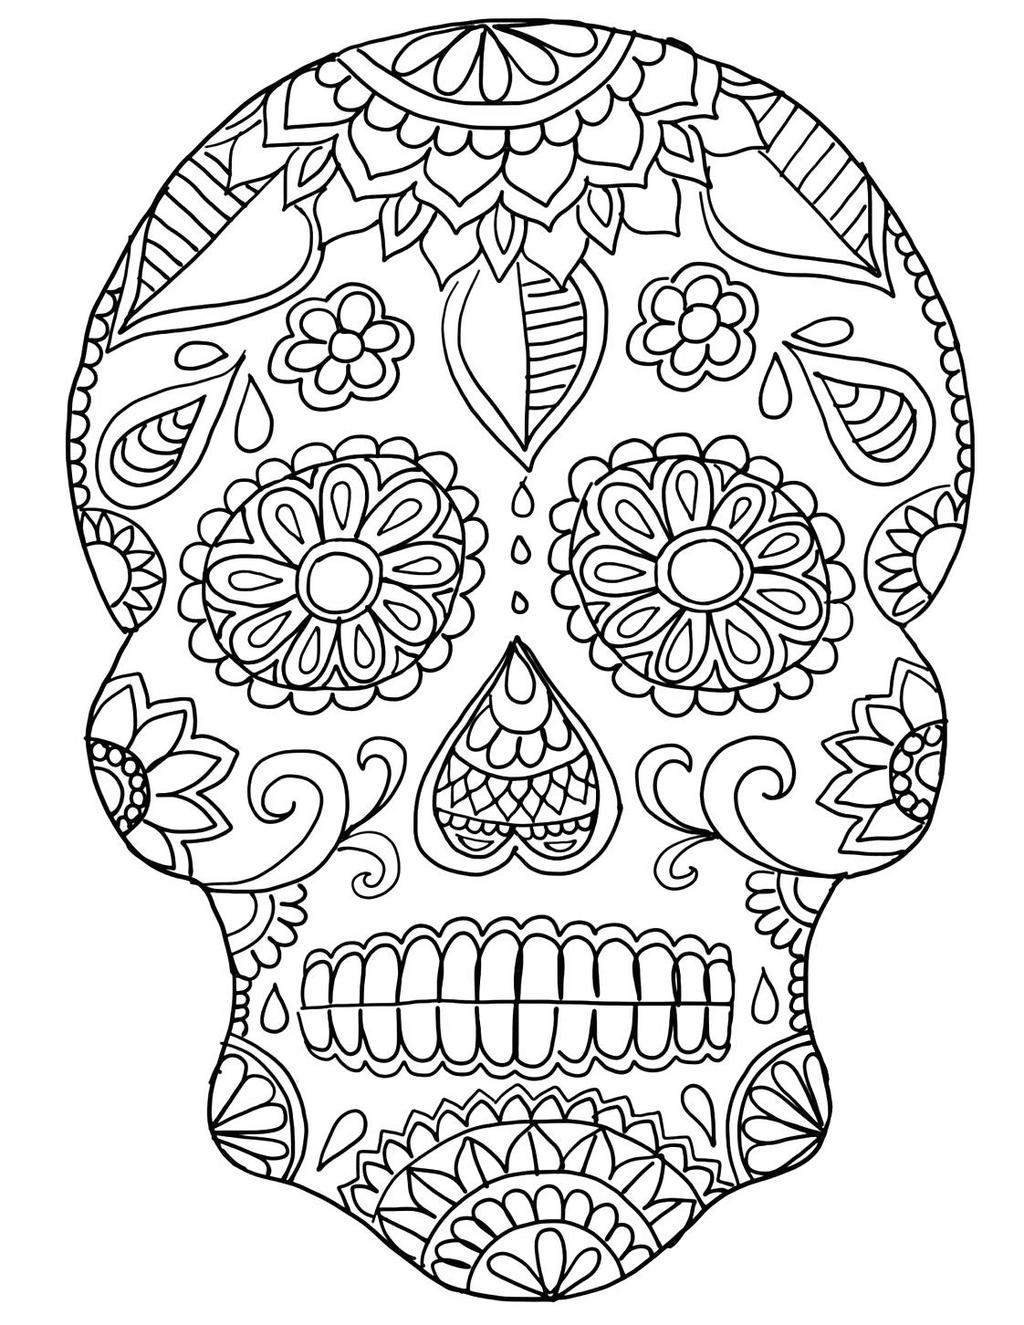 Free Calavera Coloring Pages Sugar Skull printable